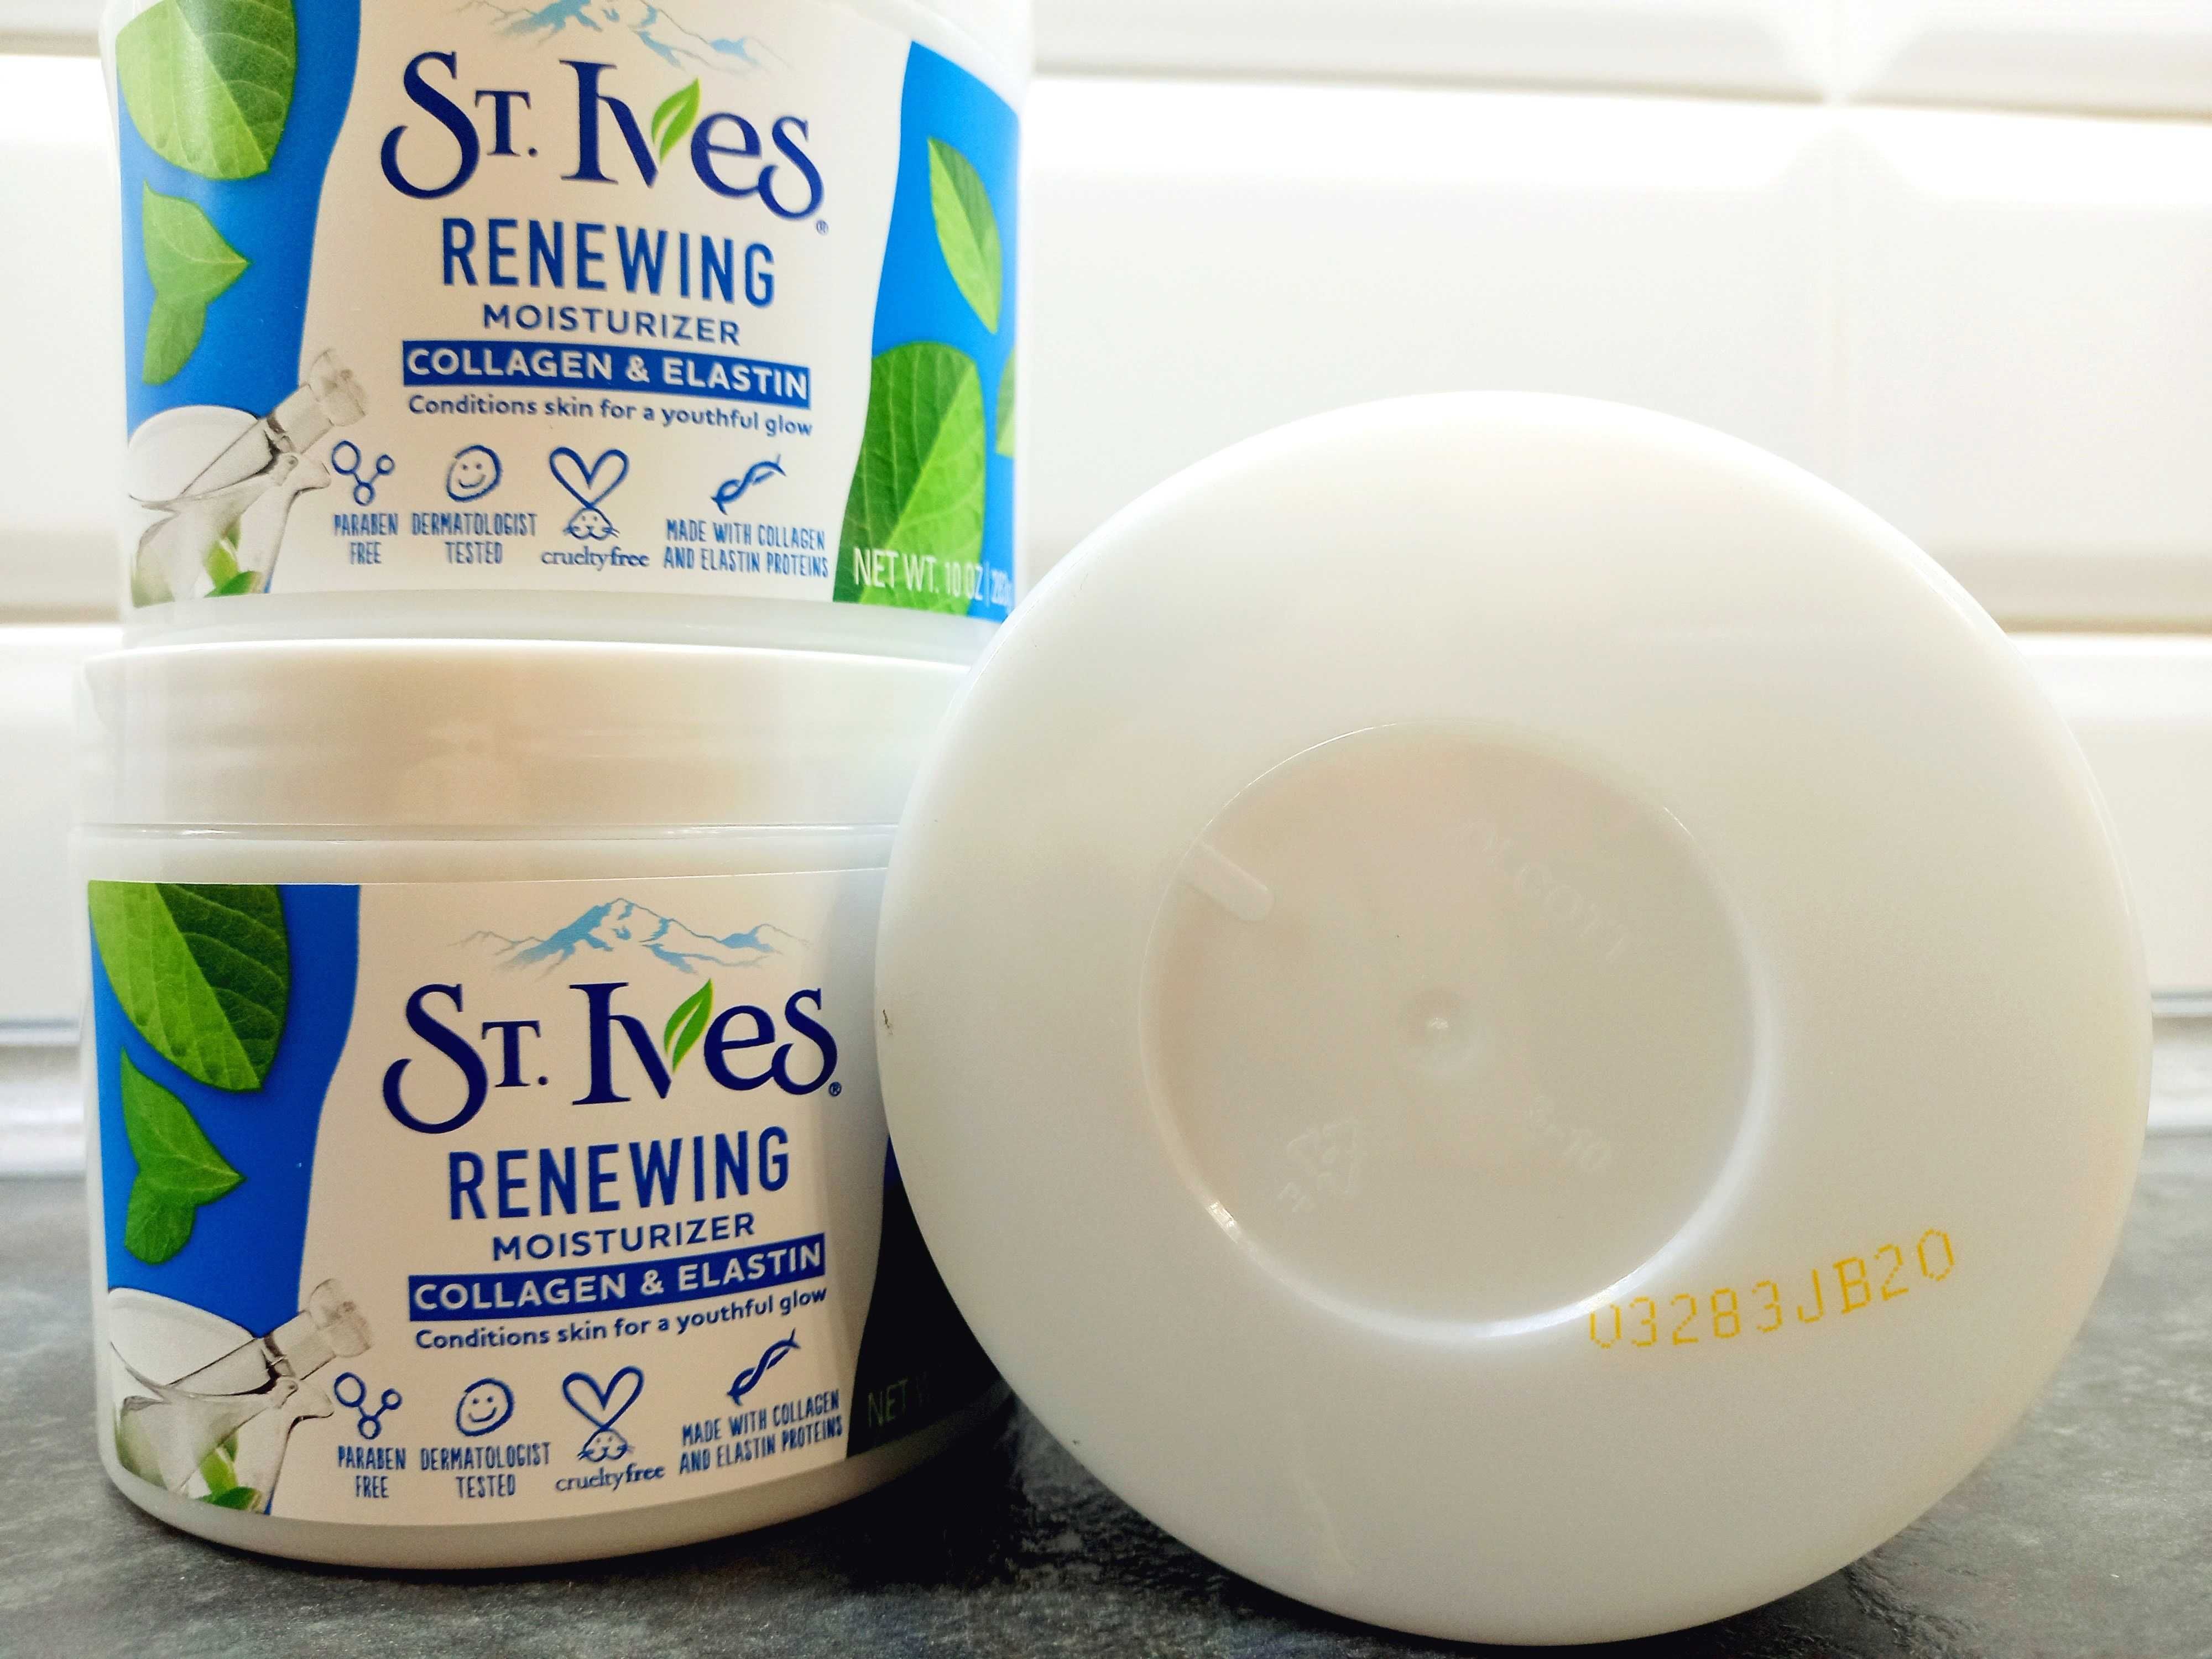 St.Ives, Moisturizer Renewing Collagen & Elastin (283г), крем для лица